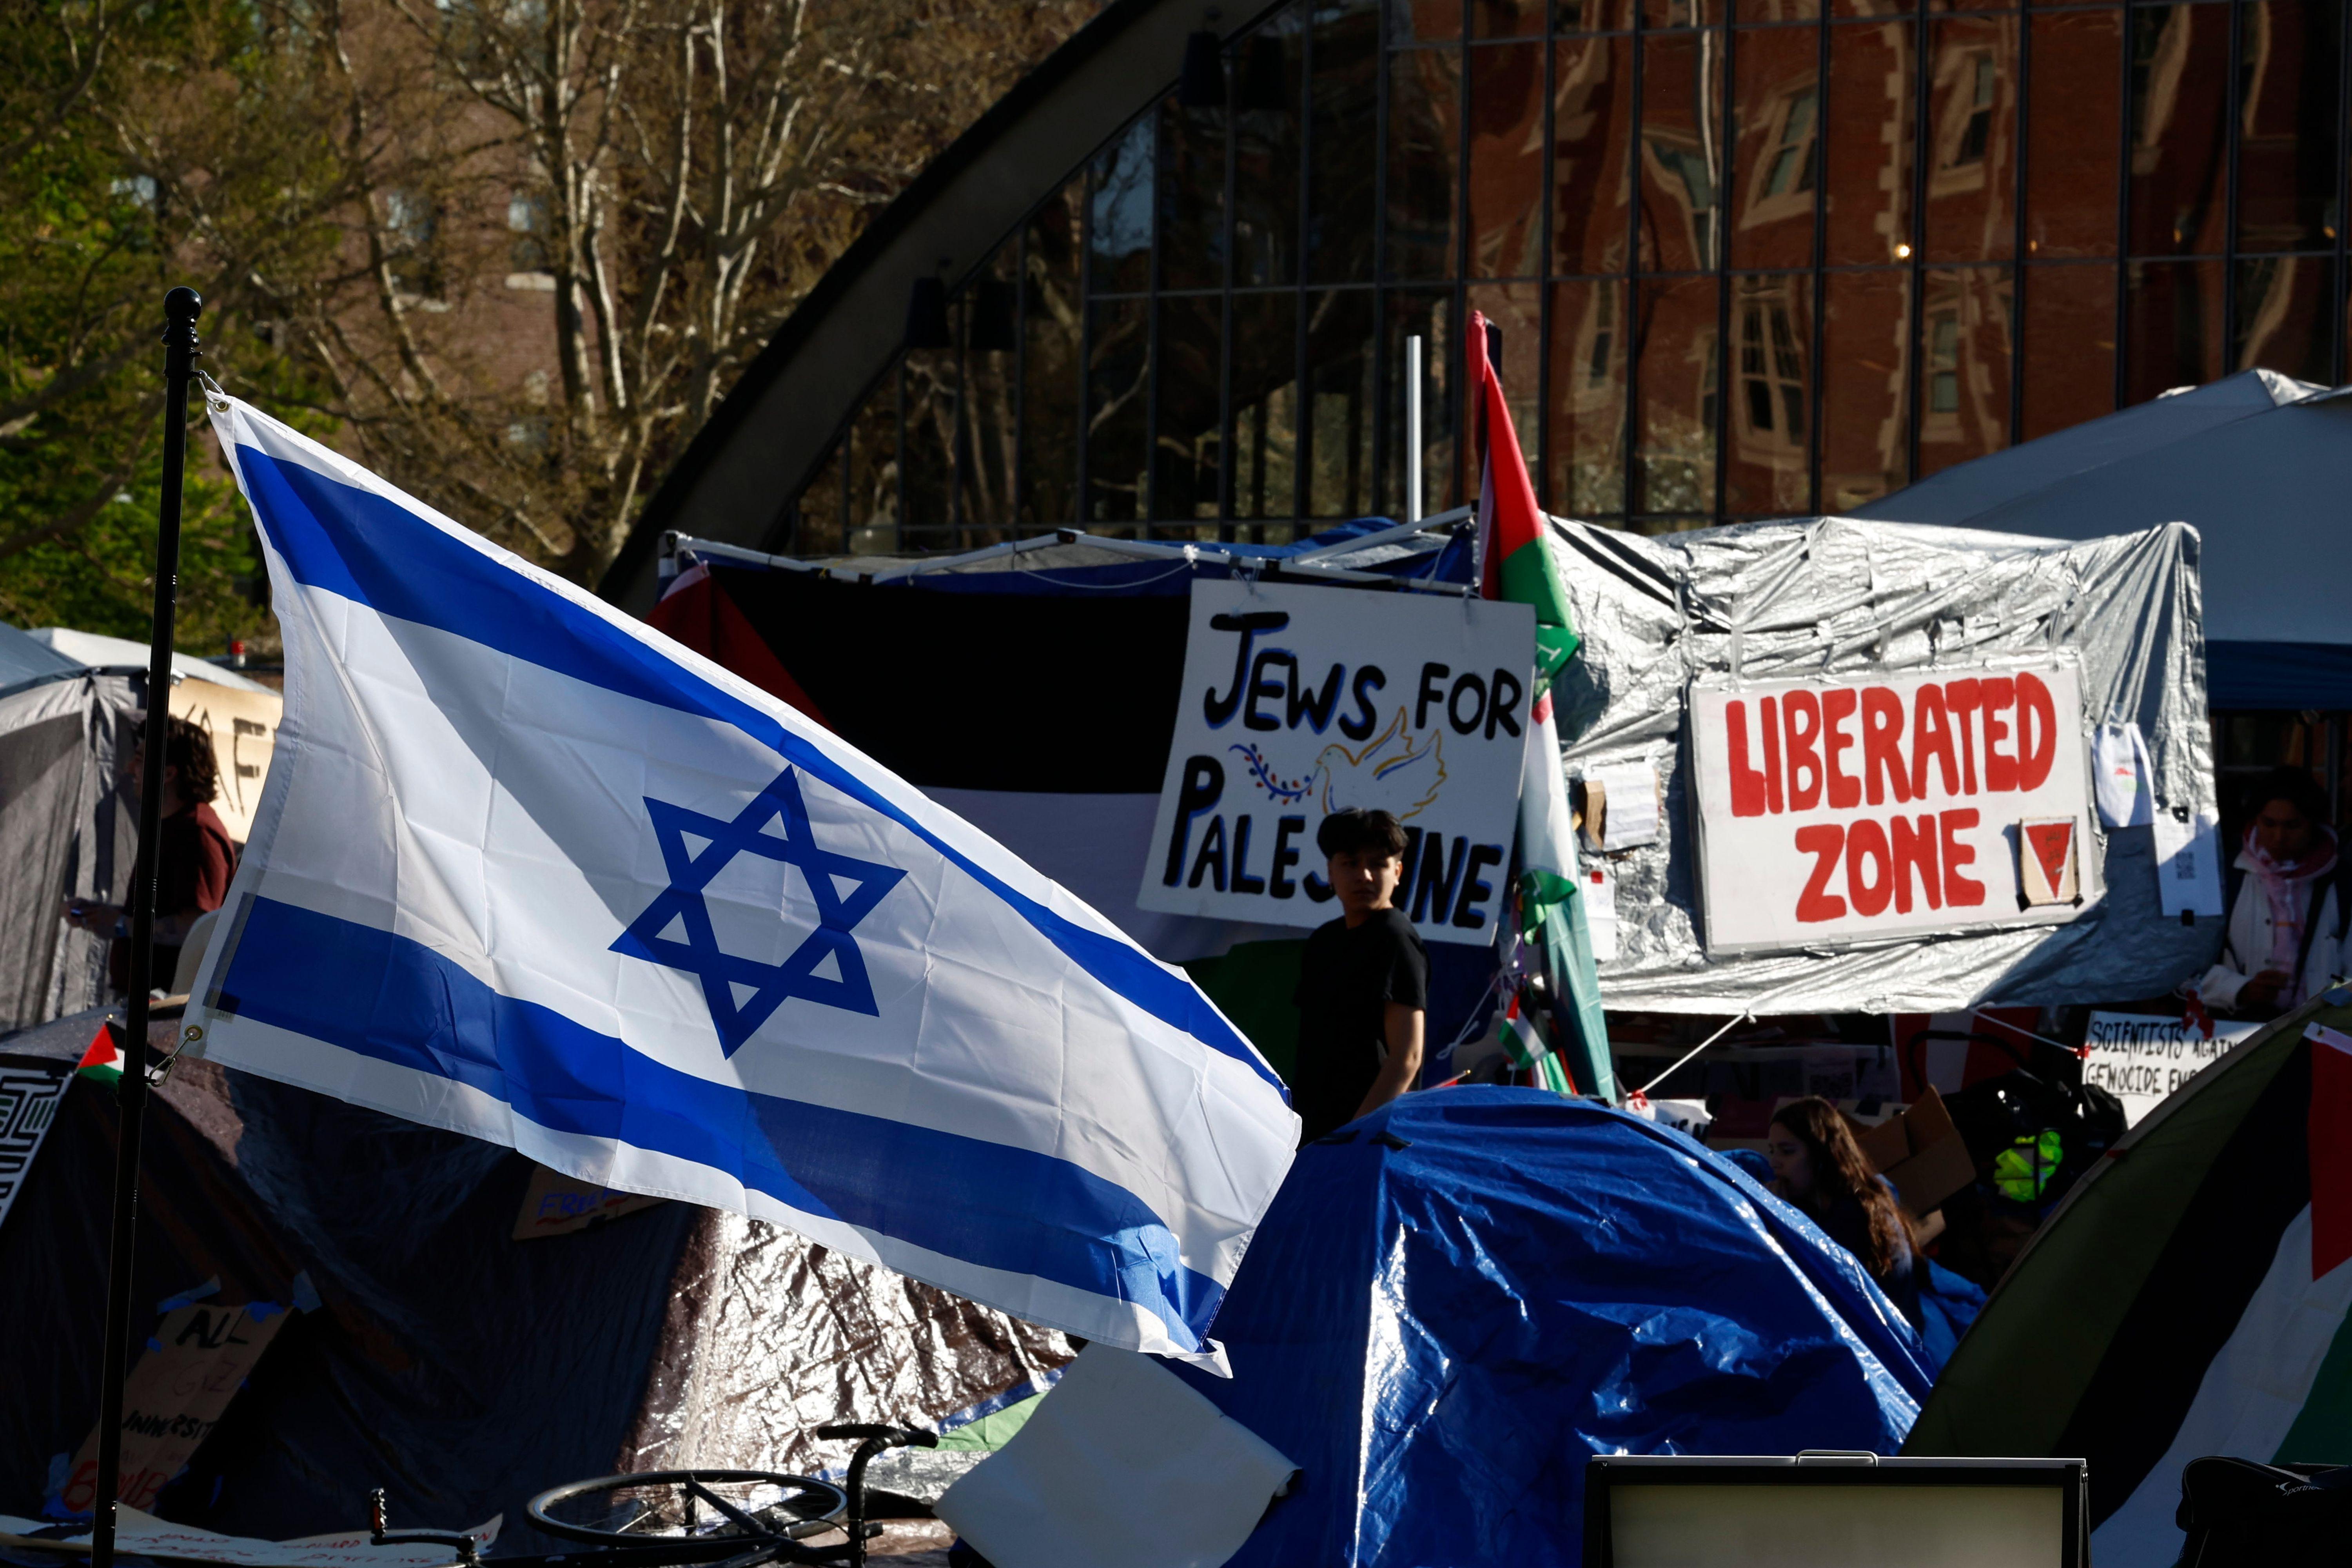 علم إسرائيلي يرفرف خارج المخيم الطلابي لحركة الاحتجاج المؤيدة للفلسطينيين في الجامعات الأمريكية في حرم معهد ماساتشوستس للتكنولوجيا في كامبريدج